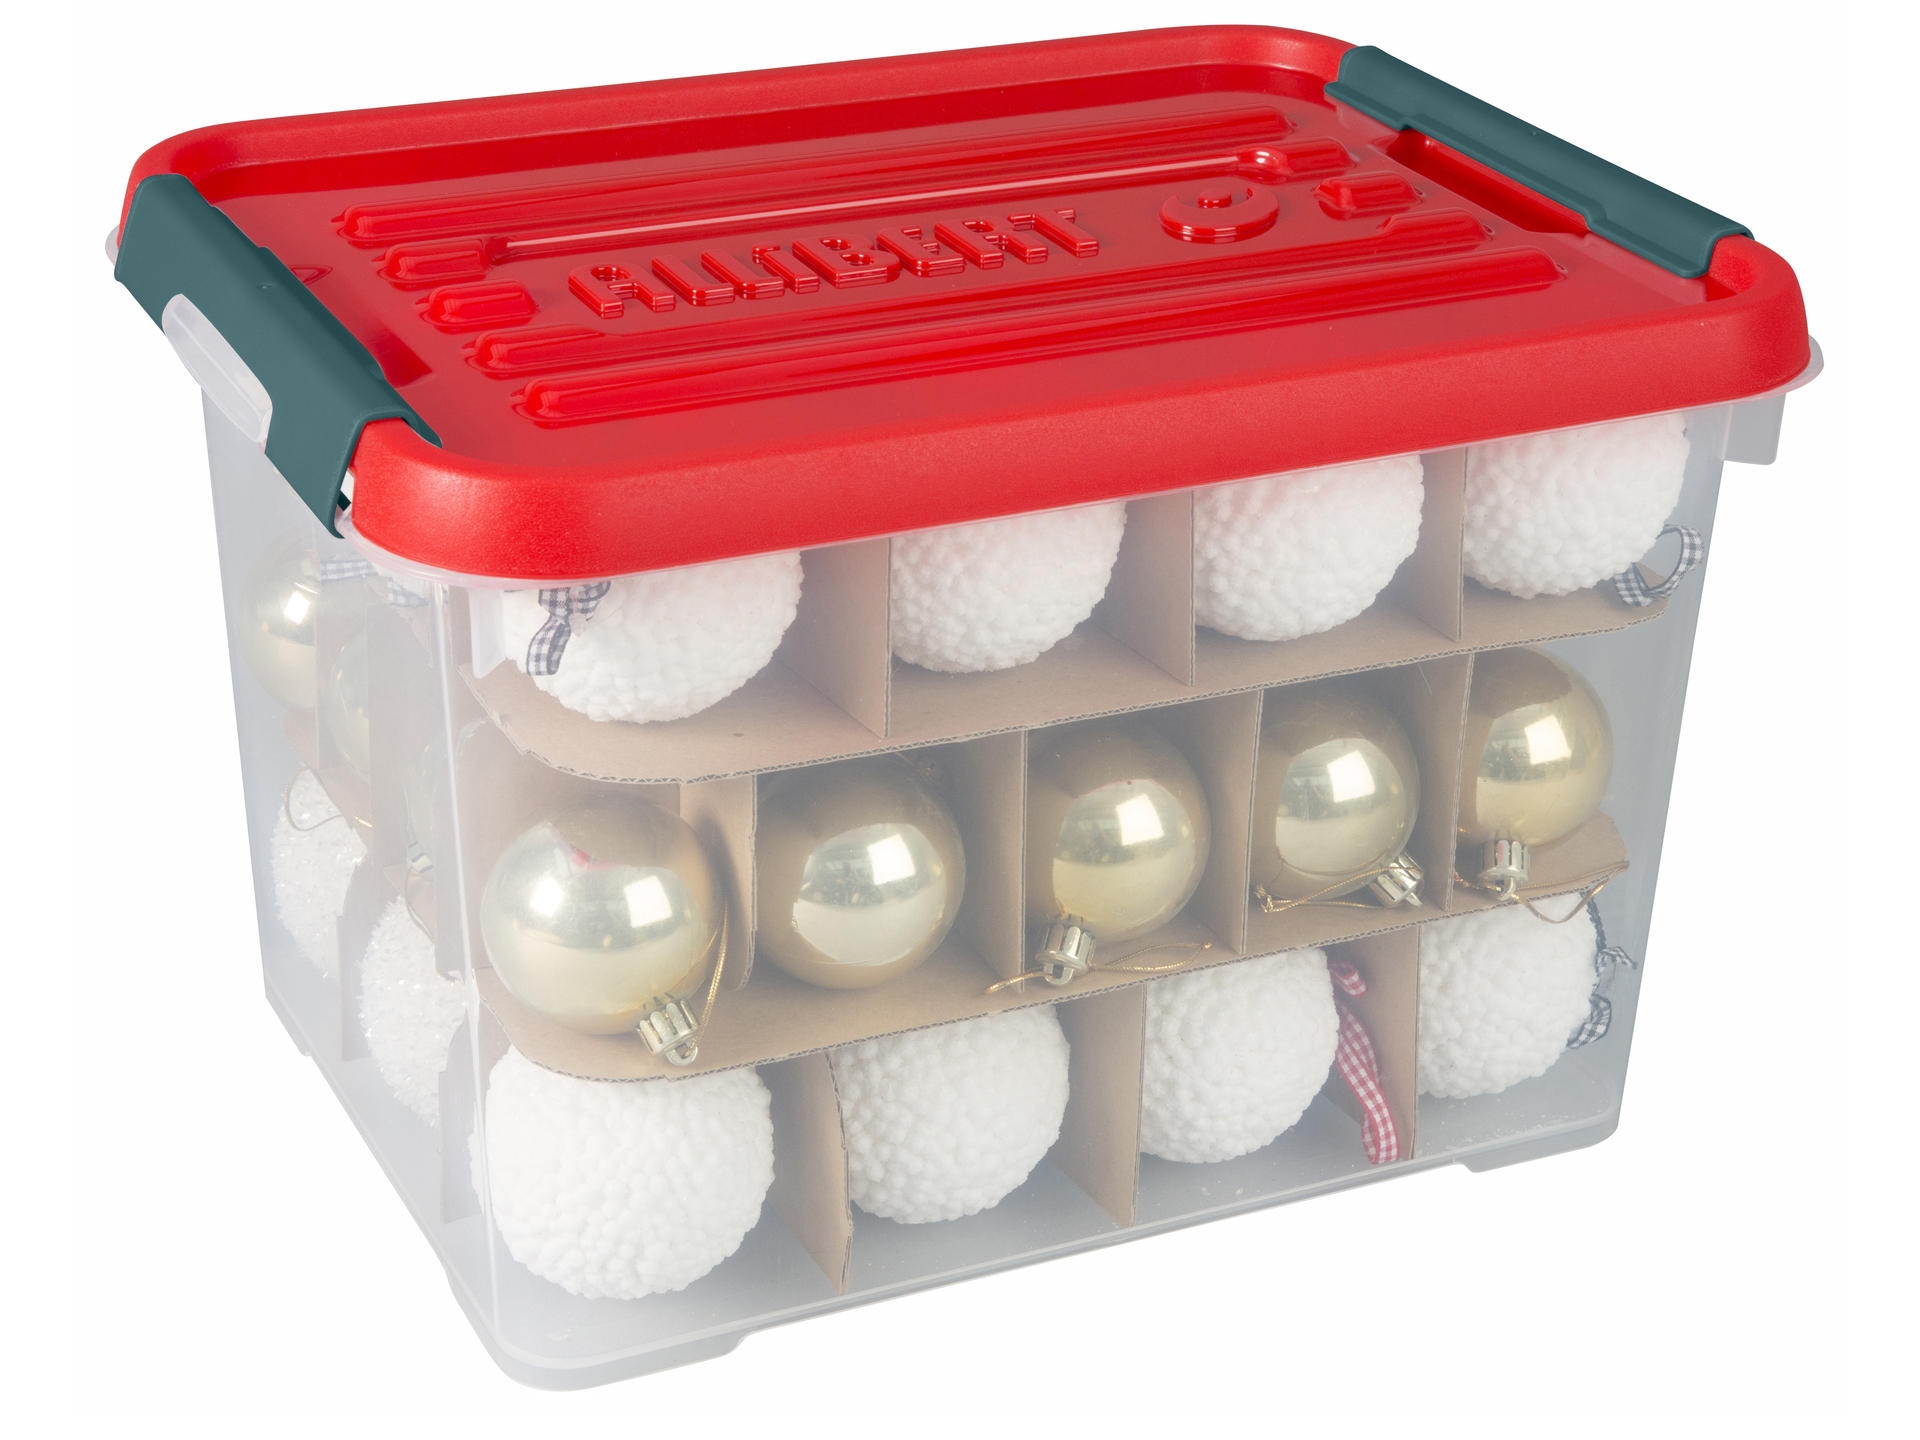 Décoration de Noël : une boite de rangement pour les boules et